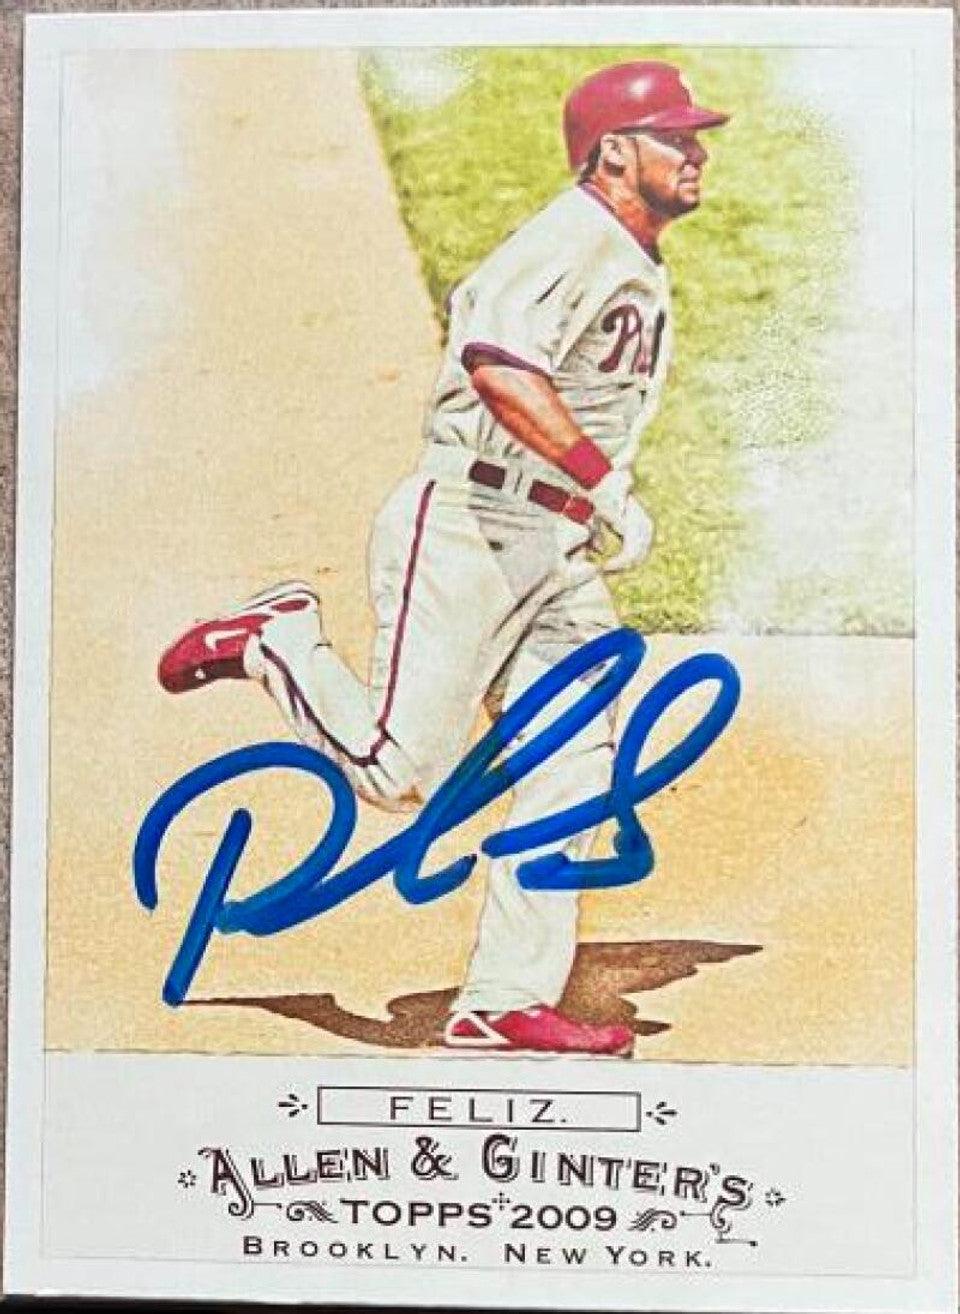 Pedro Feliz Signed 2009 Allen & Ginter Baseball Card - Philadelphia Phillies - PastPros